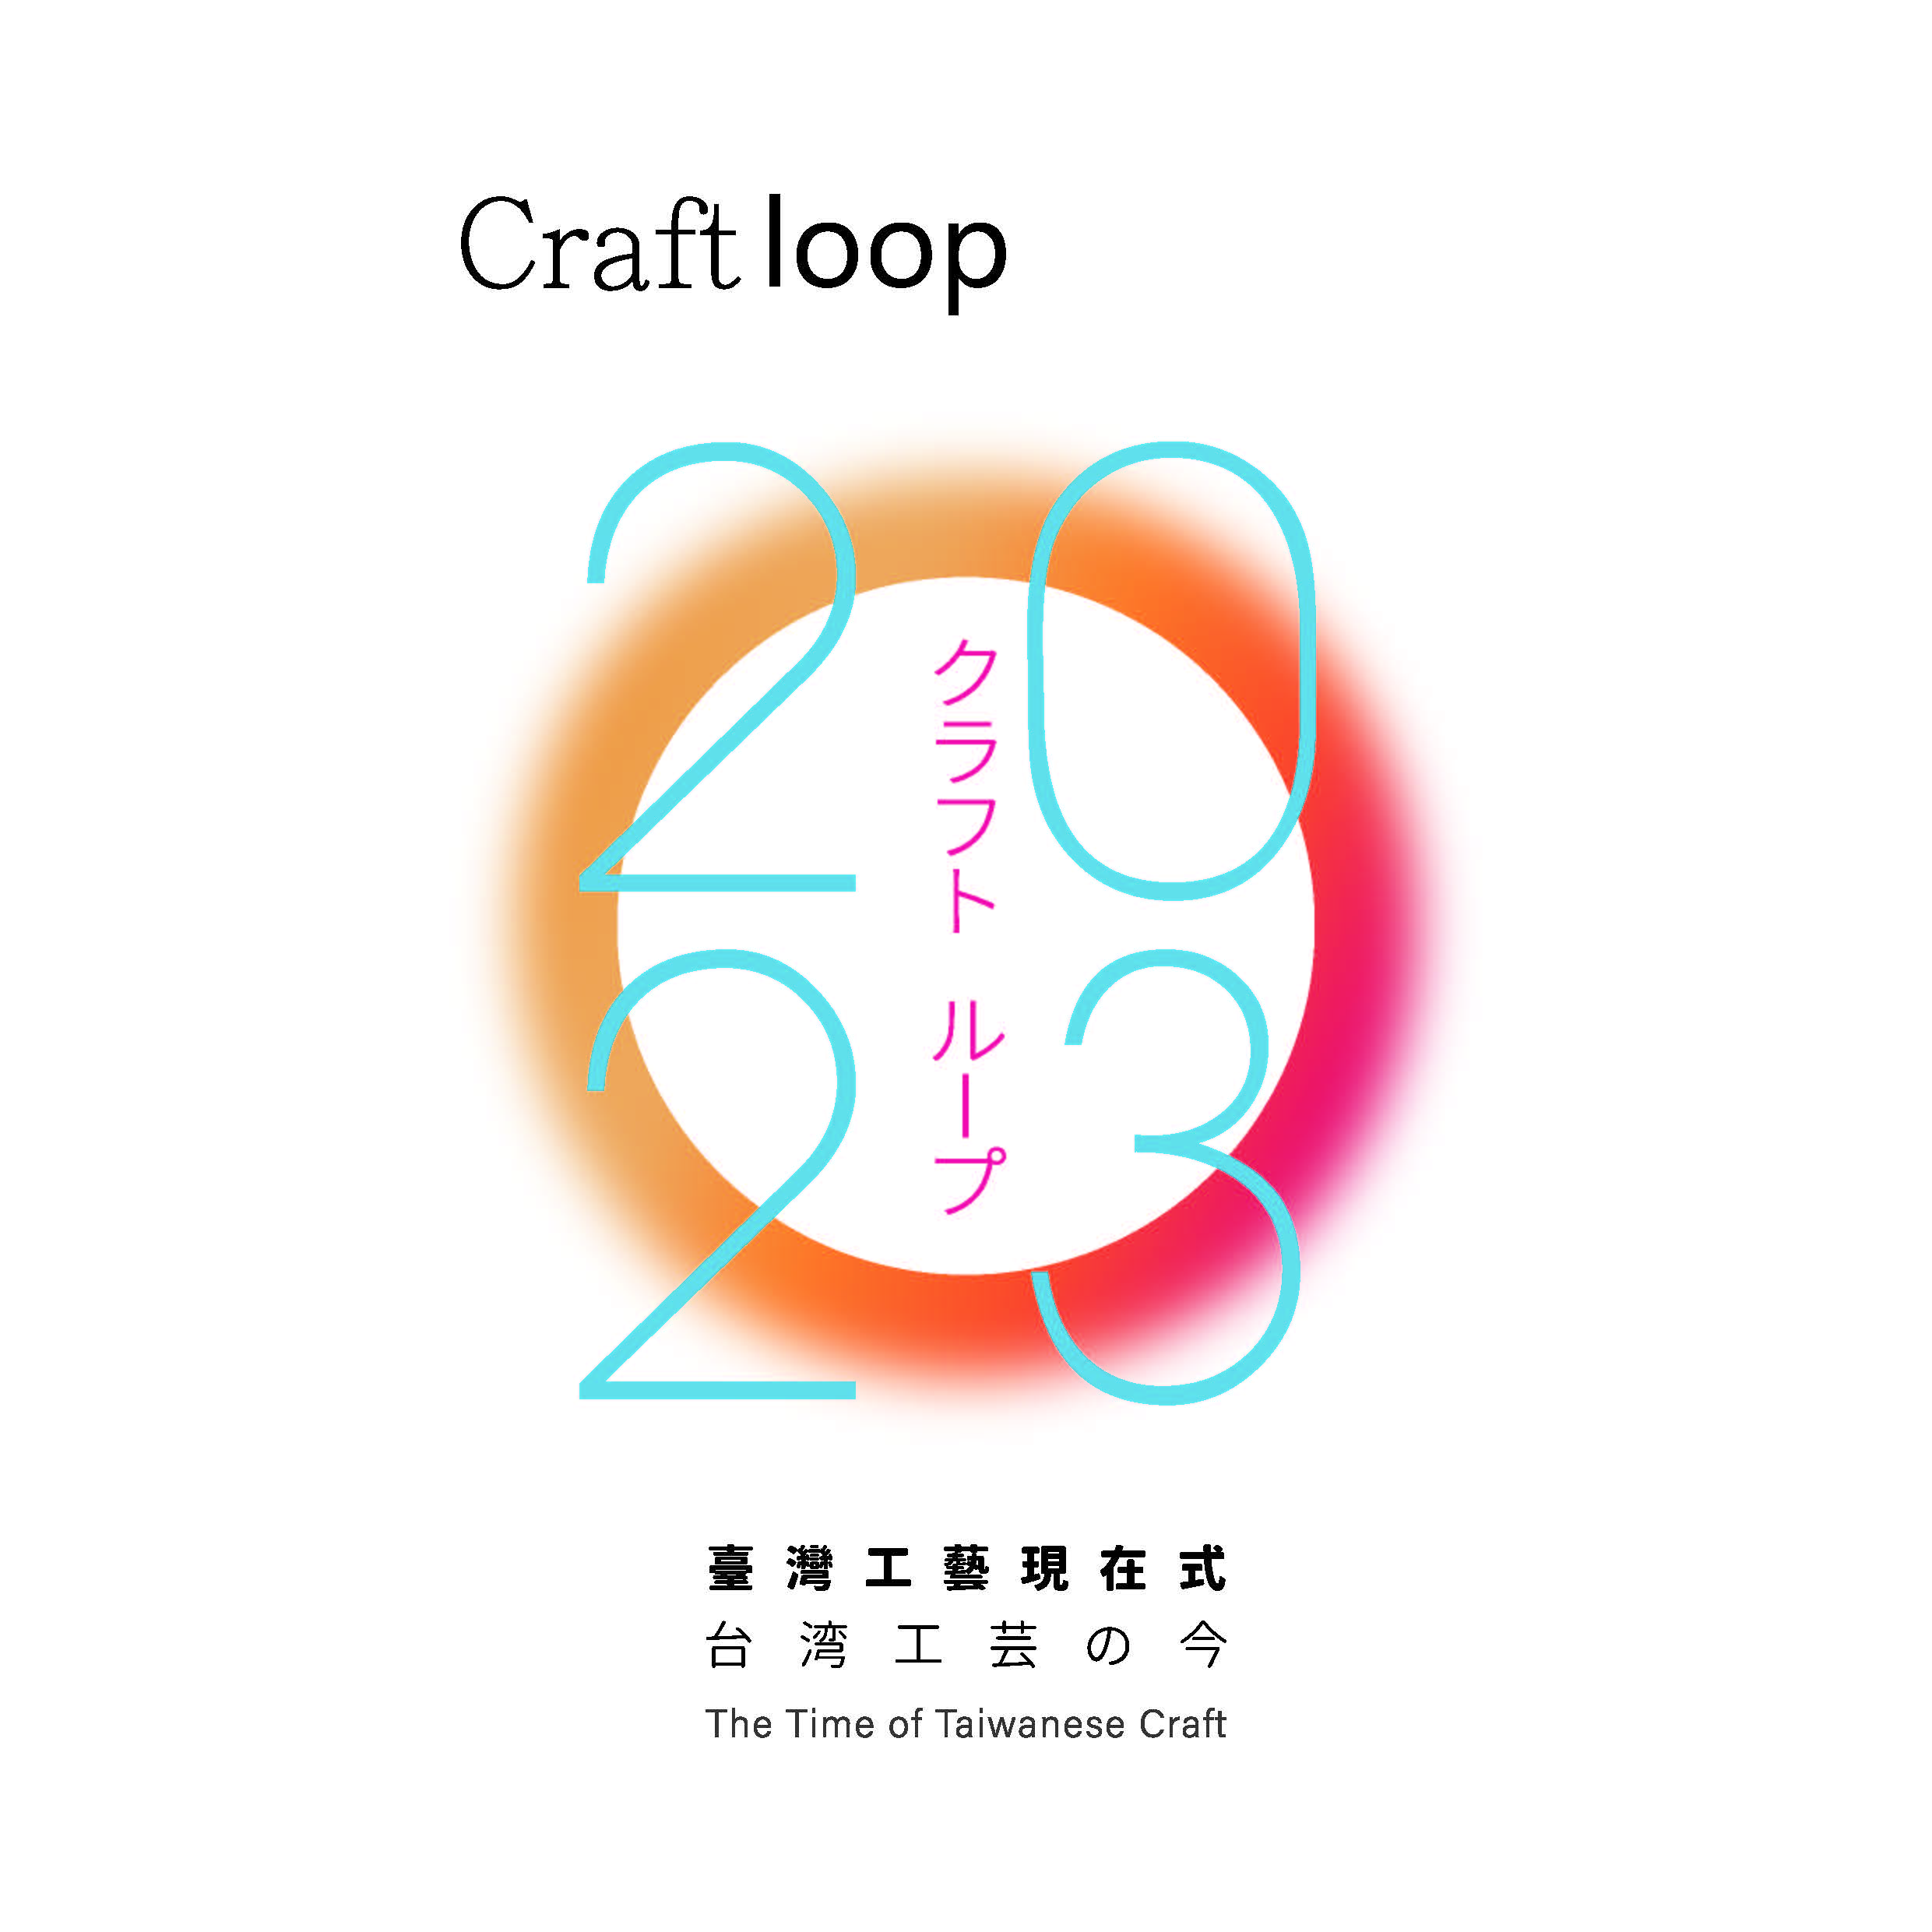 Craft loop -臺灣工藝現在式